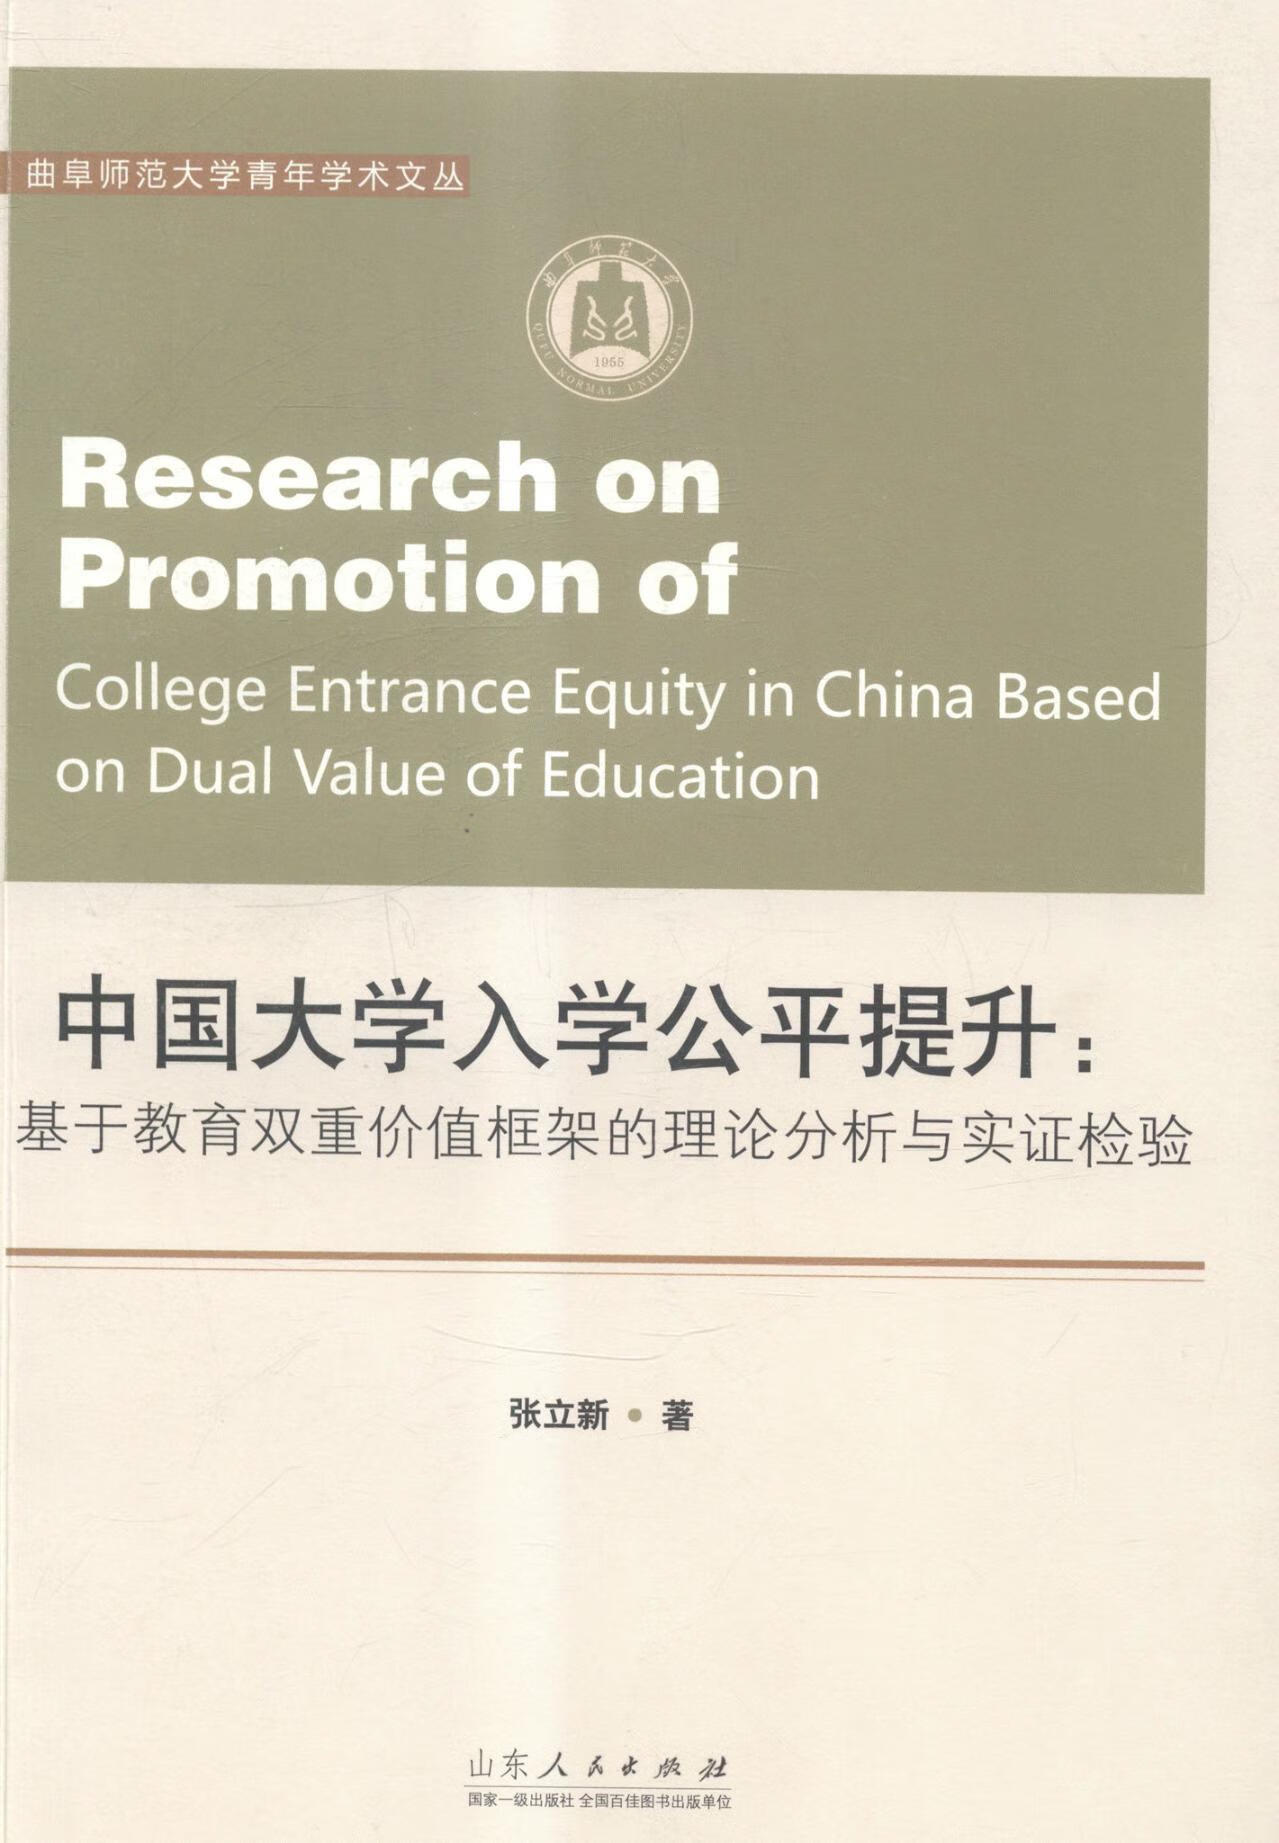 中国大学入学公平提升;基于教育双重价值框架的理论分析与实证检验张立新山东人民出版社978720908 mobi格式下载